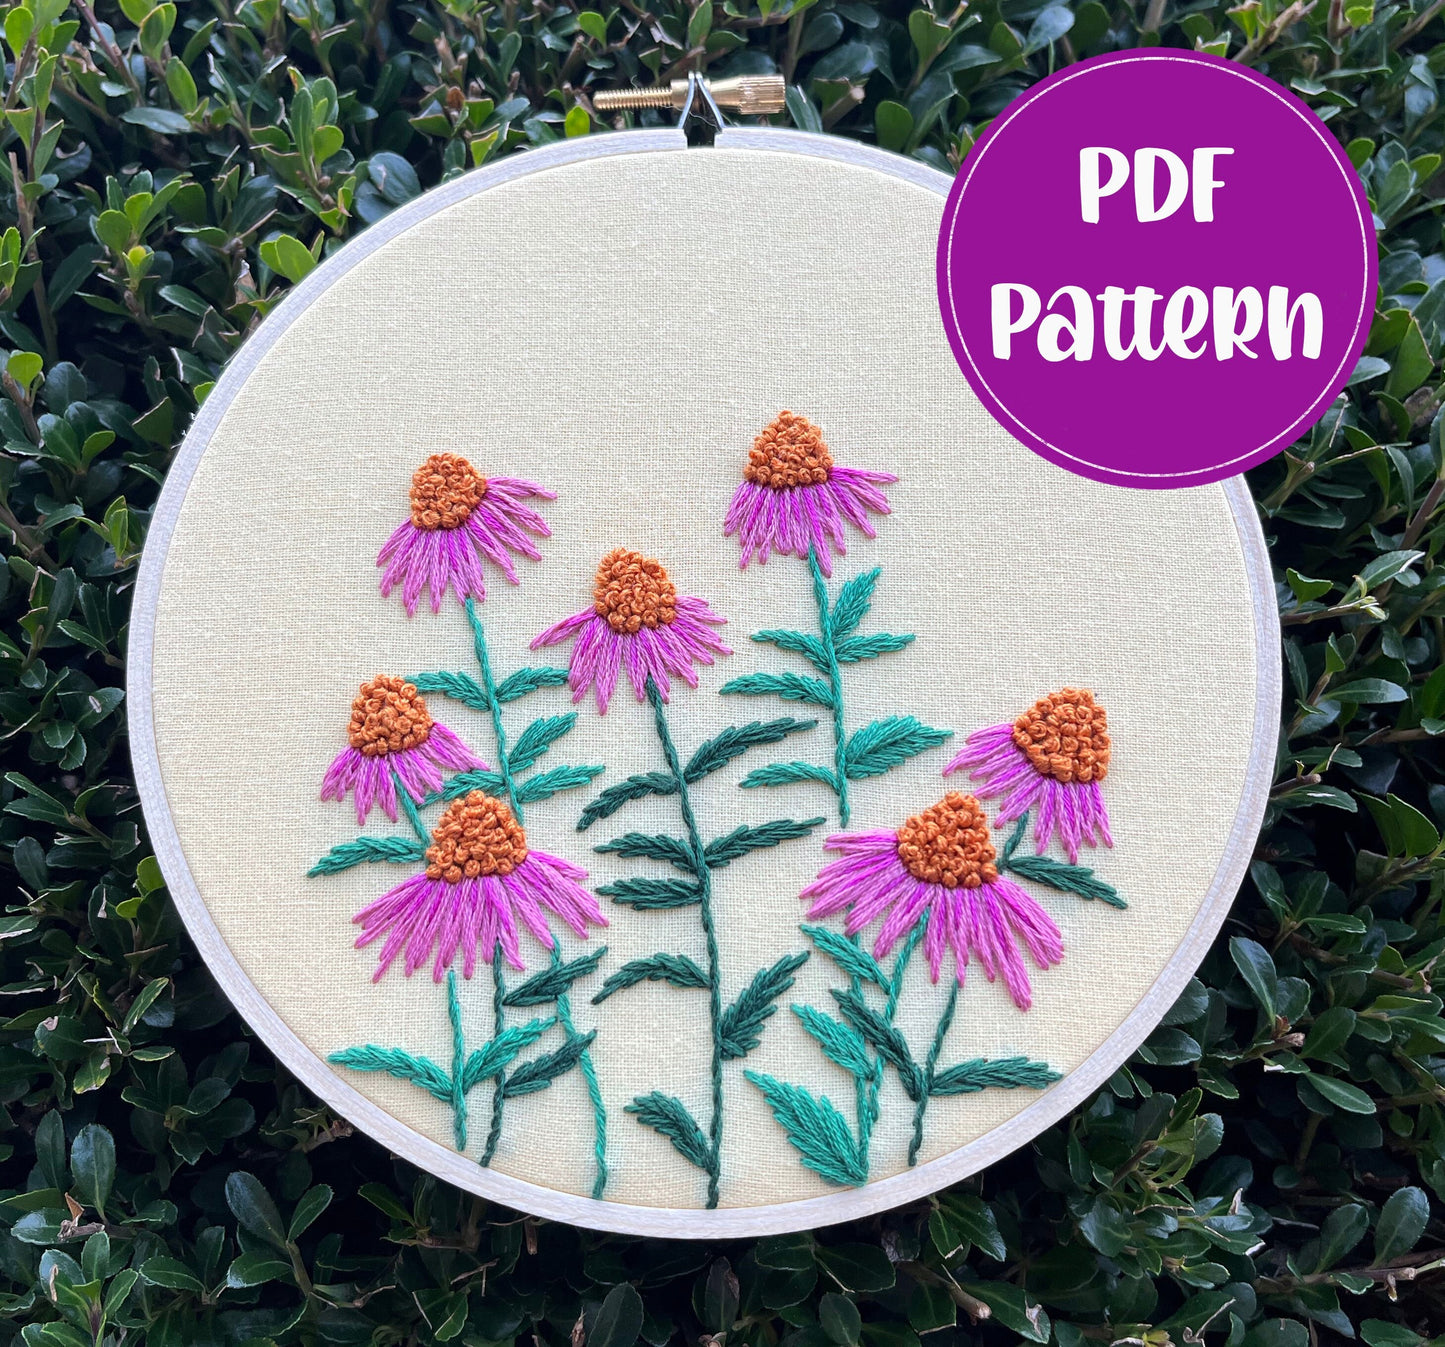 PDF Pattern - Coneflower Field, Beginner/Intermediate Embroidery Pattern